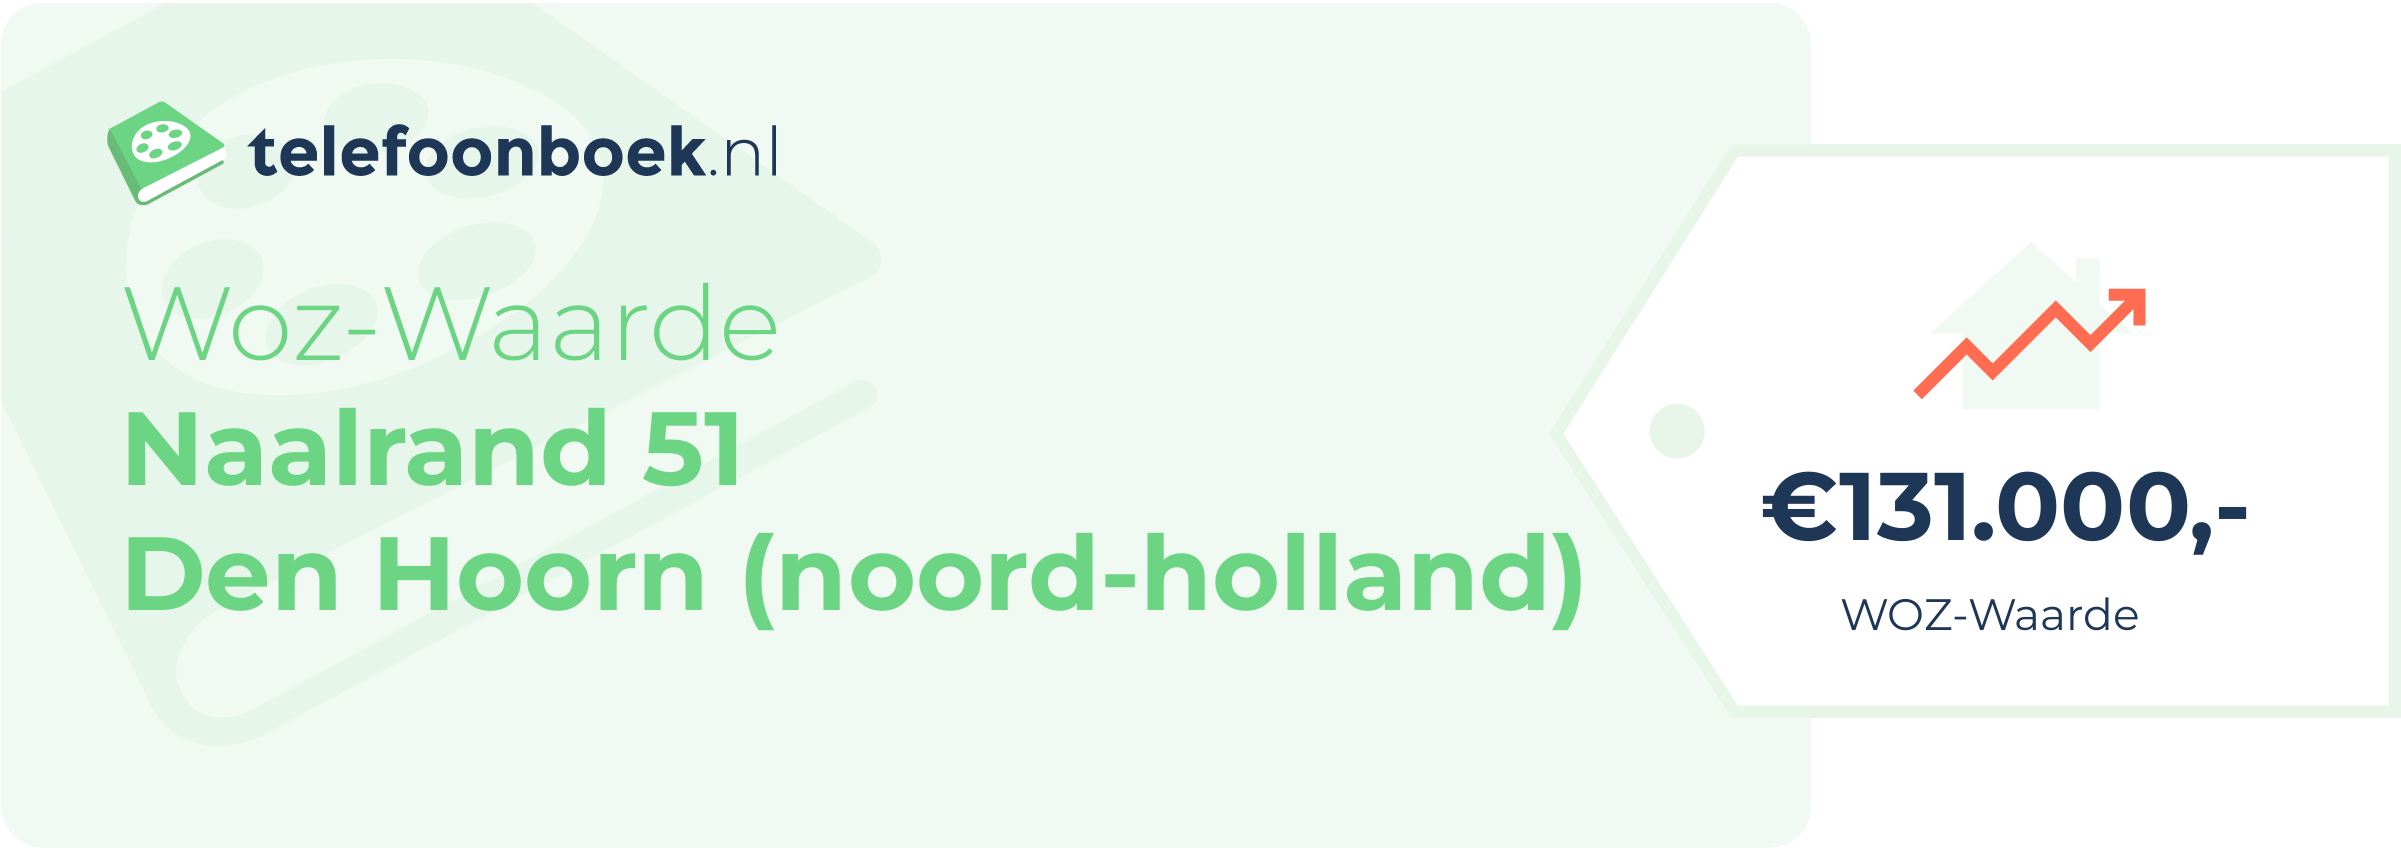 WOZ-waarde Naalrand 51 Den Hoorn (Noord-Holland)